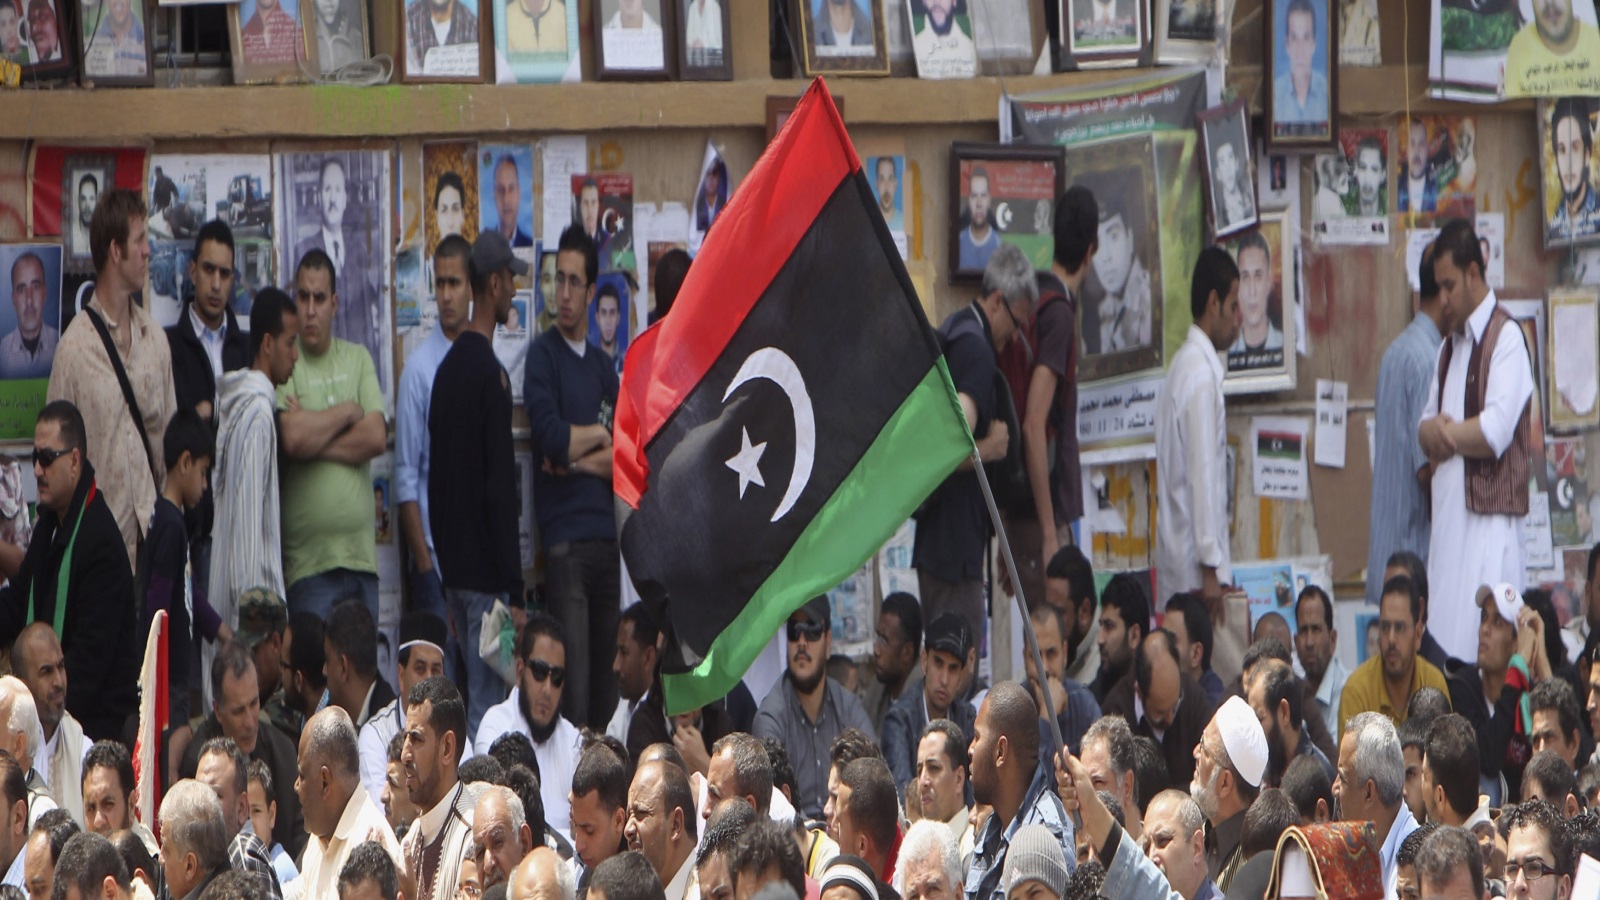 ستظل ليبيا تواجه تحديات أمنية واقتصادية ولن تستقر ما دامت هناك قوى داخلية وخارجية تعمل على زعزعة استقرارها، ومحاولات إعادتها لبقايا منظومة القذافي أو الحكم العسكري الشمولي